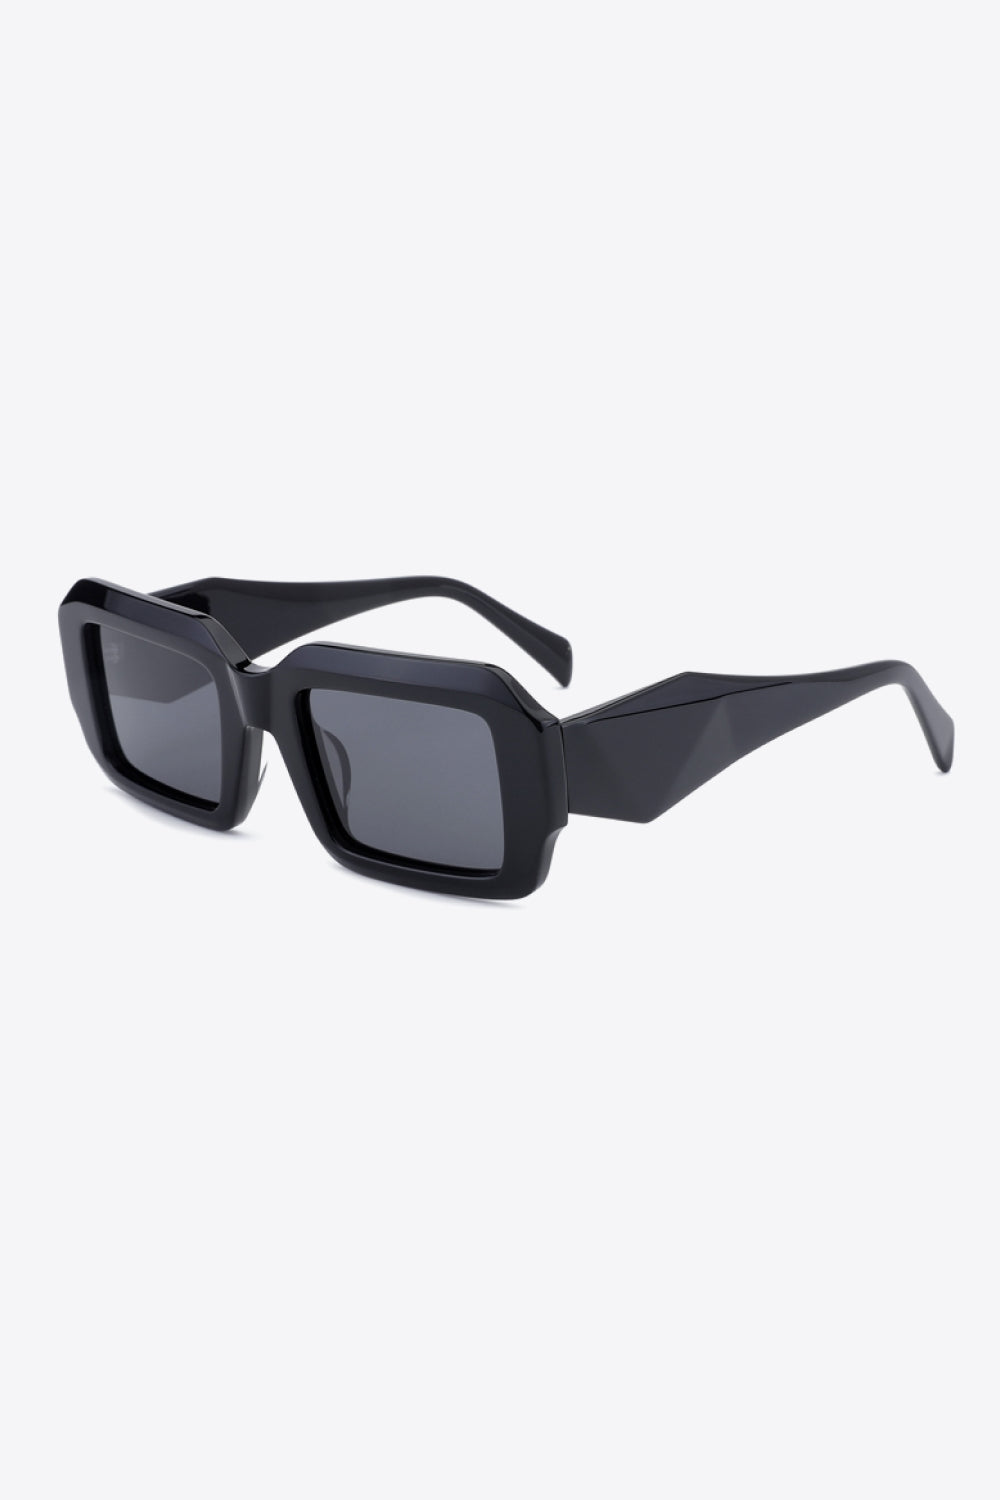 Rectangle TAC Polarization Lens Full Rim Sunglasses Black One Size